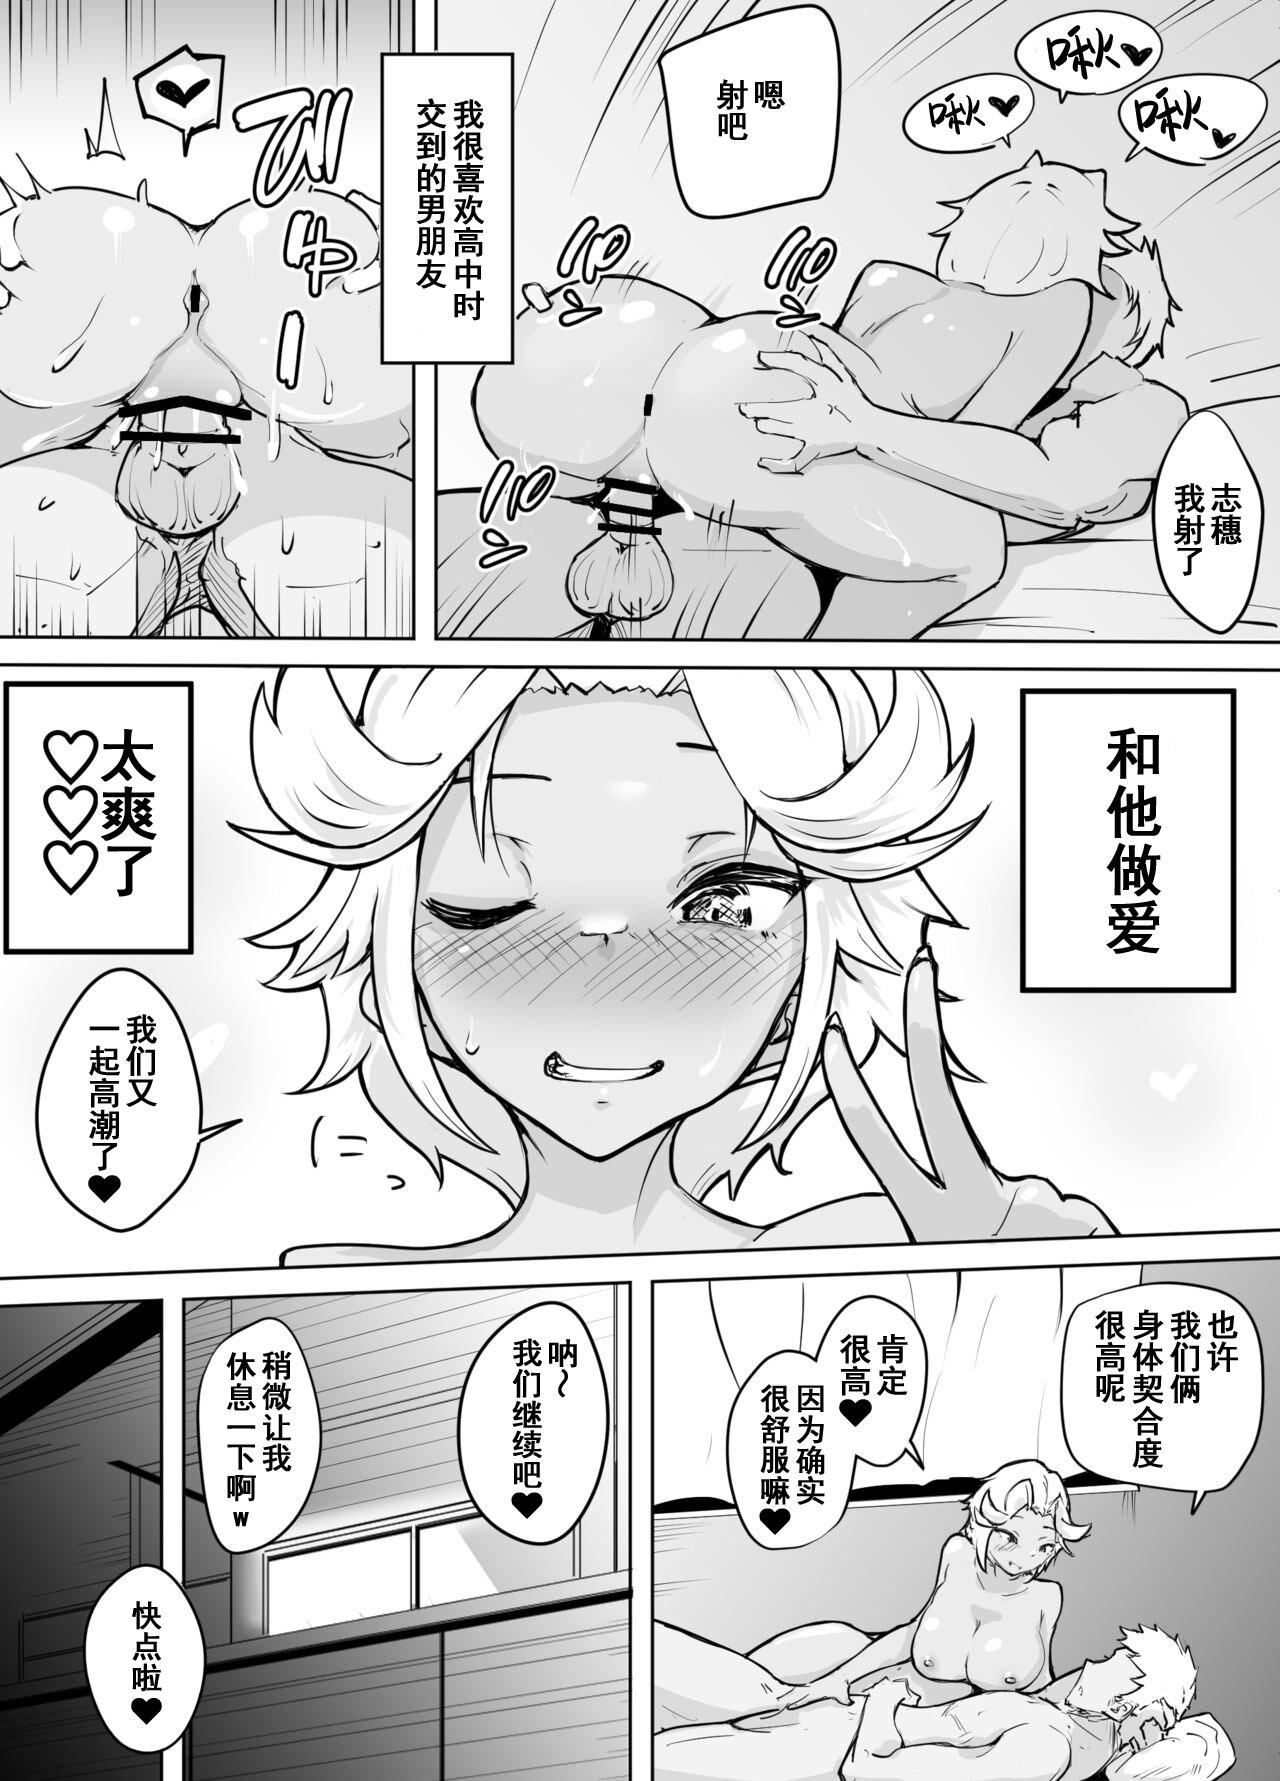 Pervert Kare yori Ii Hito ga Aishou Appli de Mitsukatte... - Original Wanking - Page 4